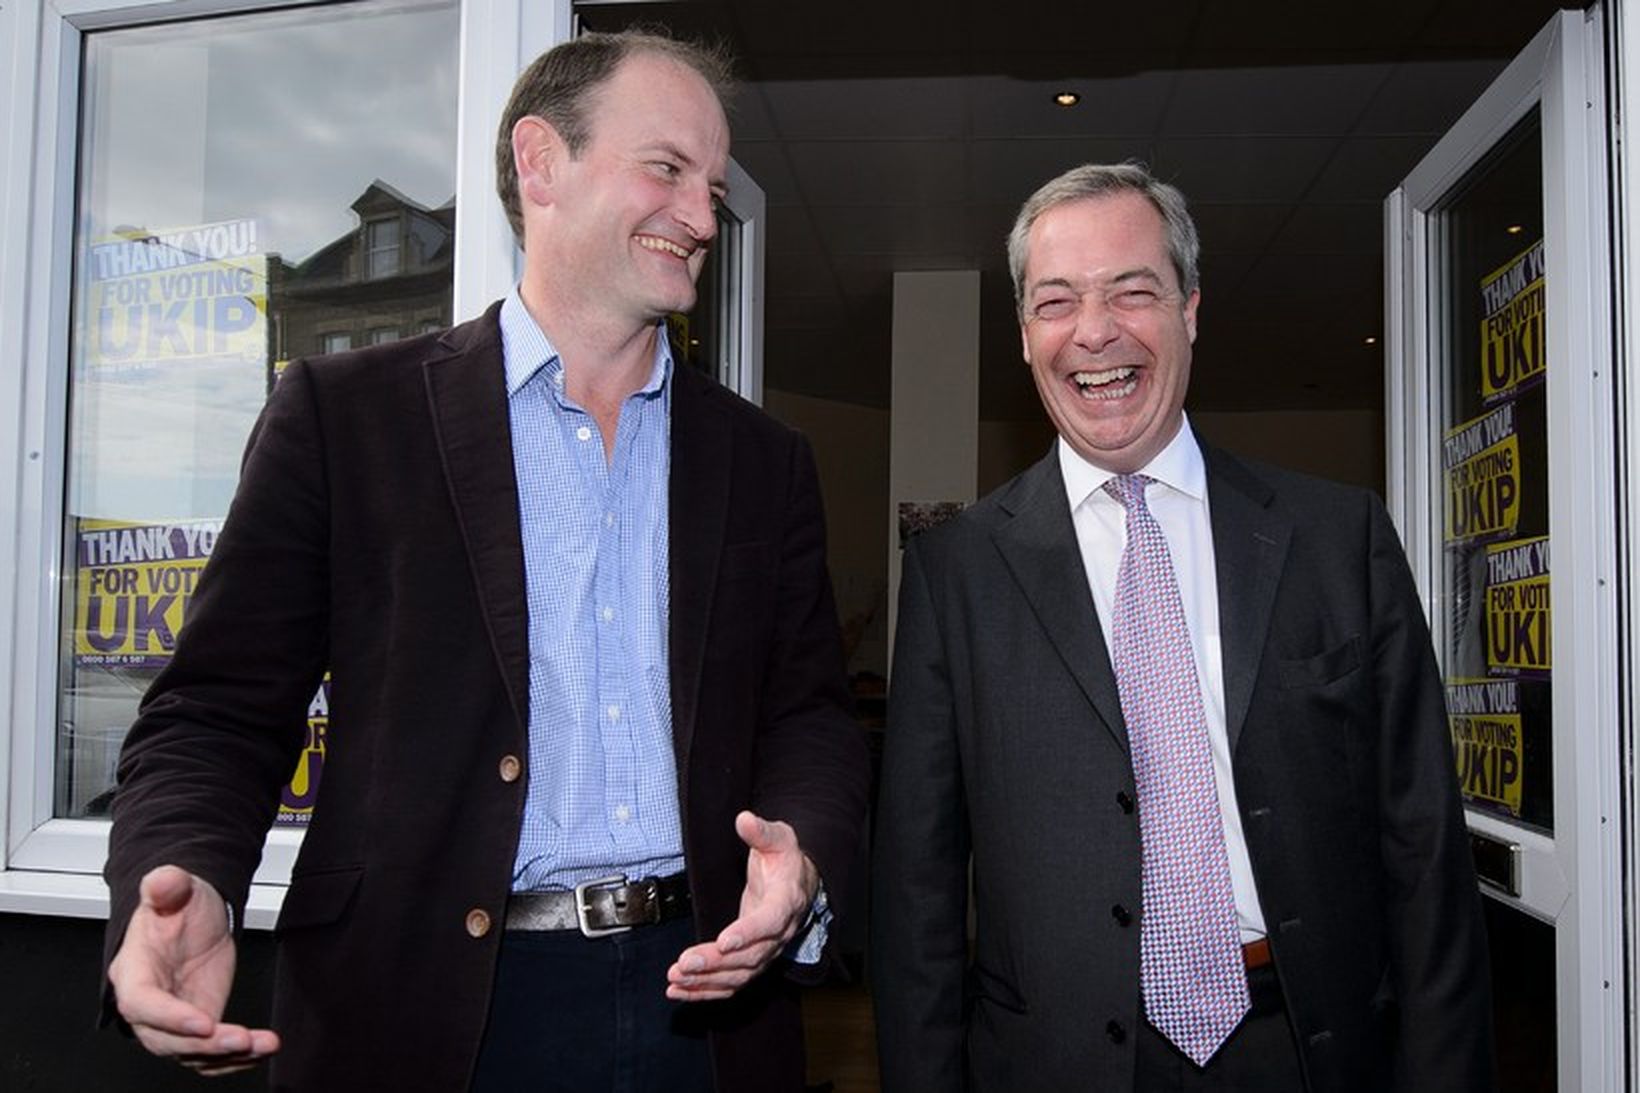 Douglas Carswell þingmaður UKIP og Nigel Farage leiðtogi UKIP